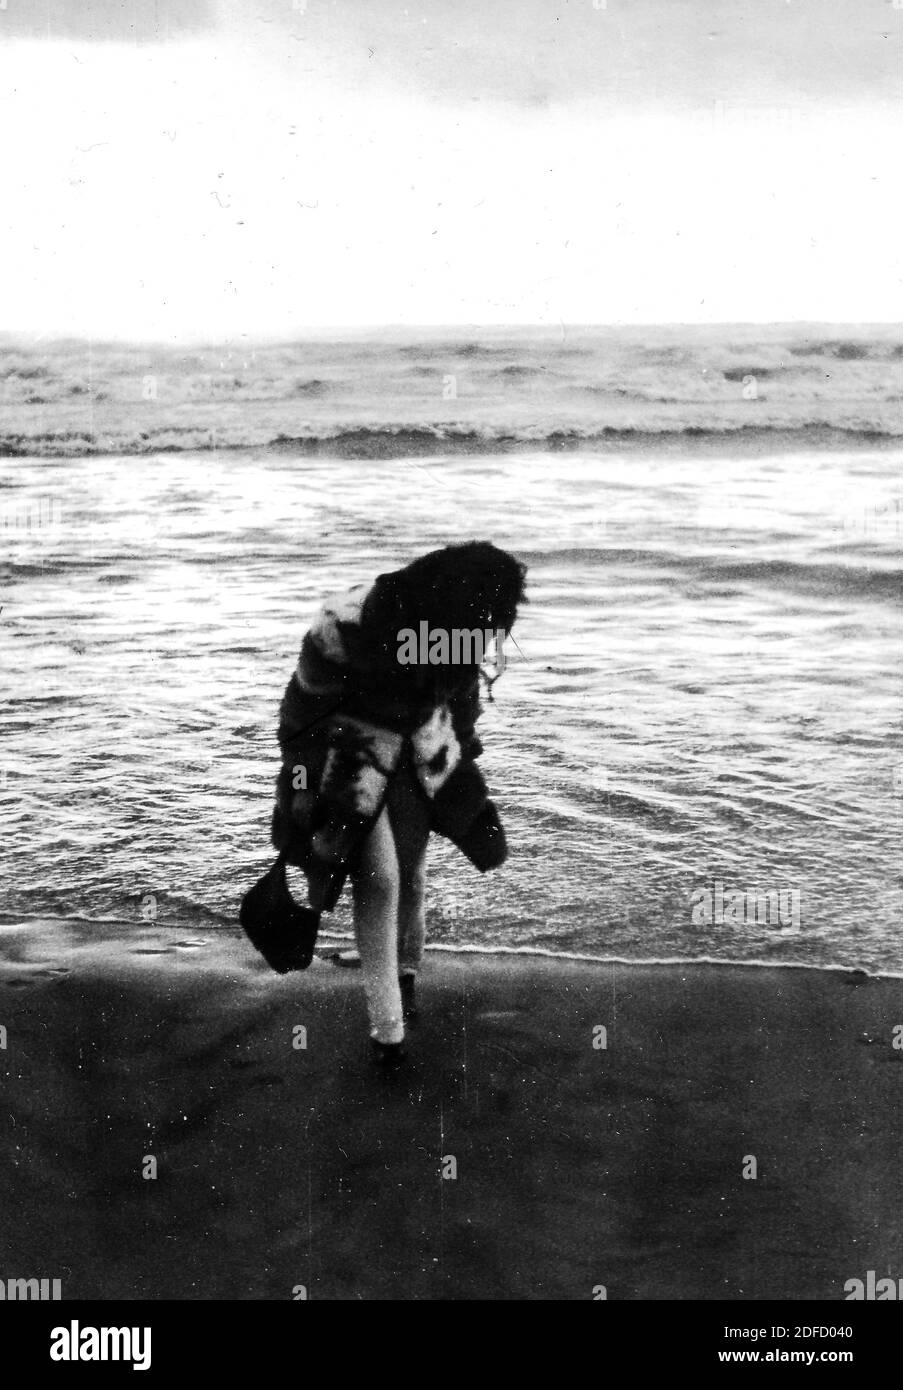 Années 1960, années 1970 une jeune femme de mer en plein air, en noir et blanc seulement, sur la plage de Castinglioncello en Toscane. Italie. Numérisation des rayures et des imperfections Banque D'Images